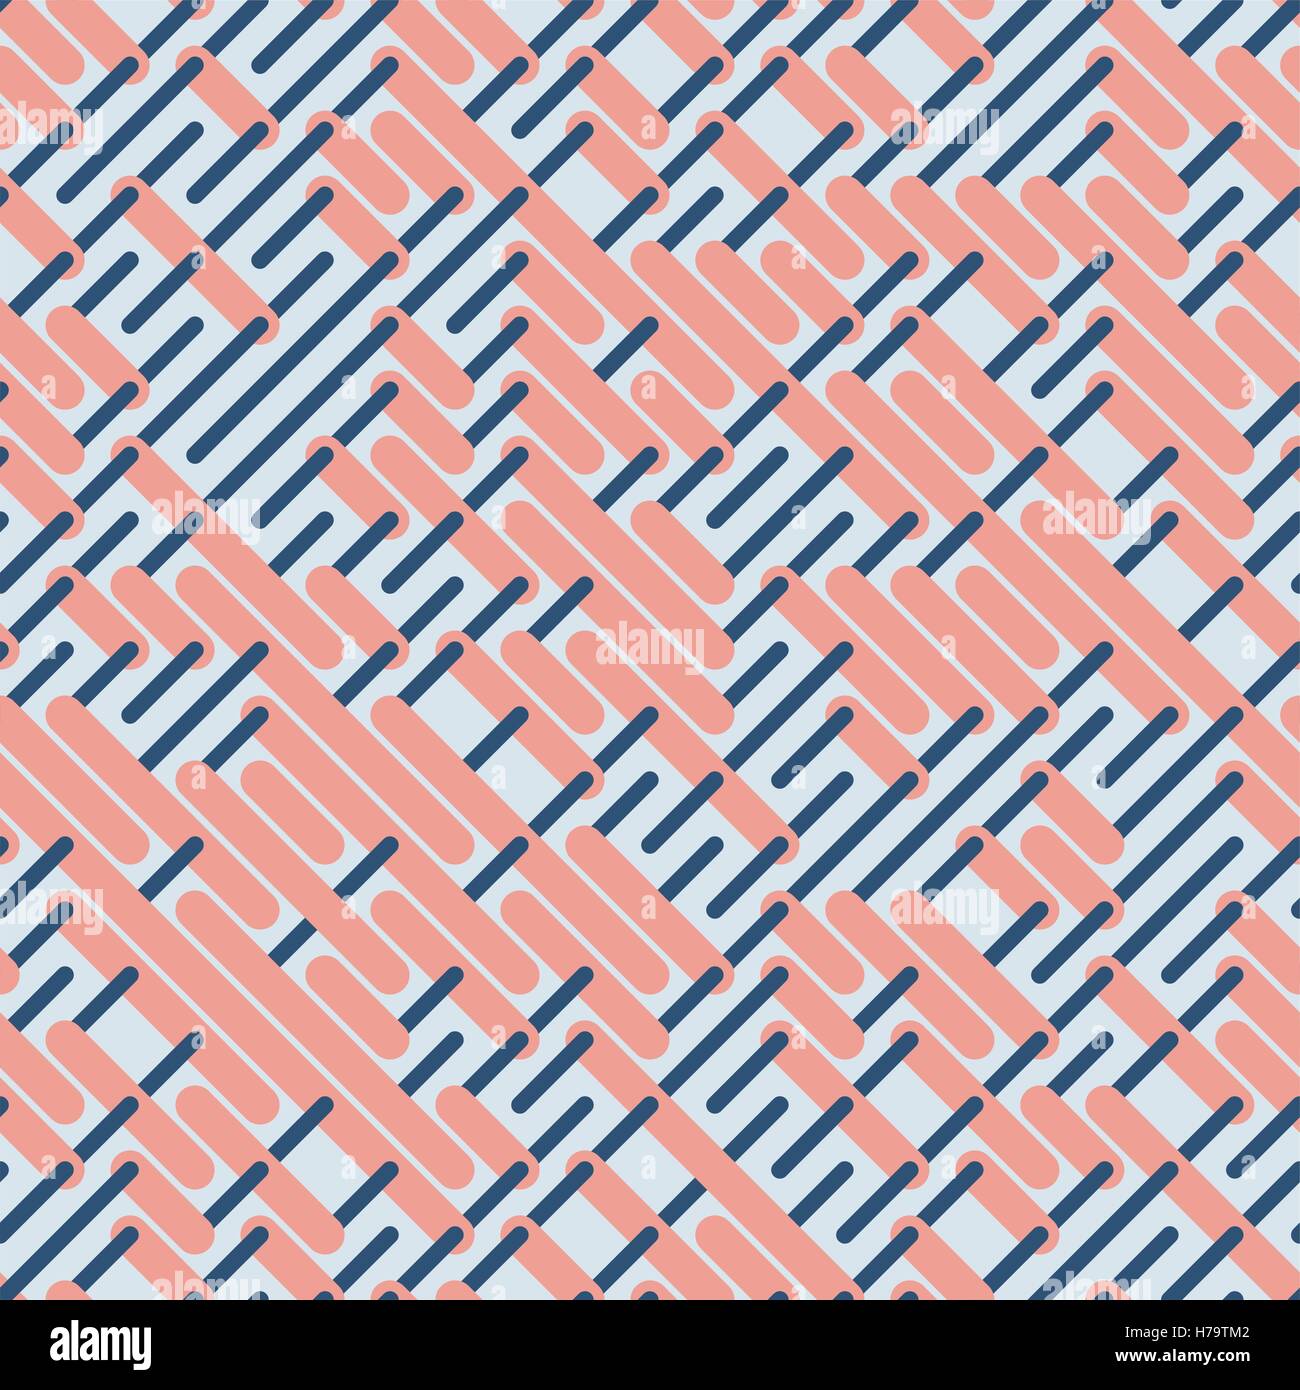 Vektor nahtlos gerundete parallelen Linien-Muster in Pink und blau Stock Vektor